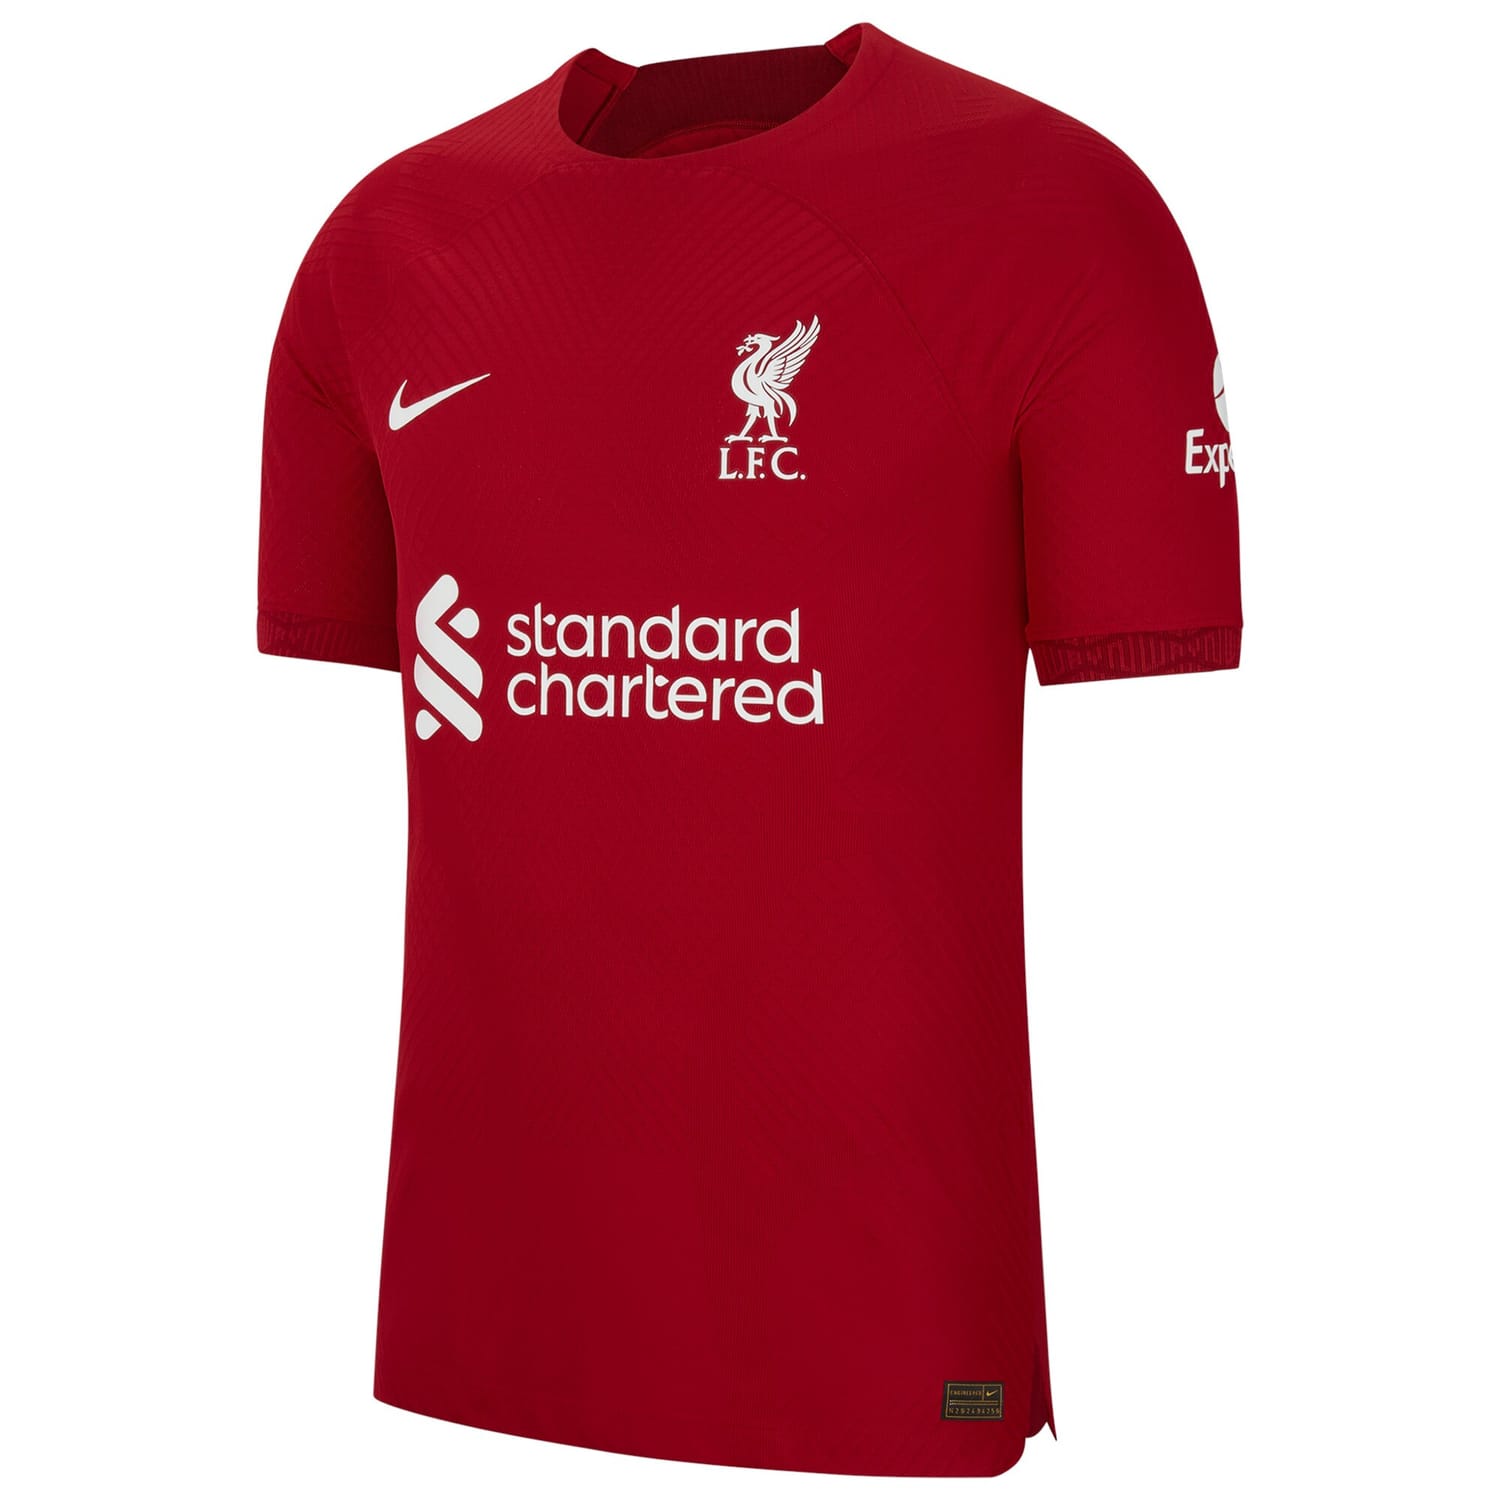 Premier League Liverpool Home Authentic Jersey Shirt 2022-23 player Luis Díaz 23 printing for Men